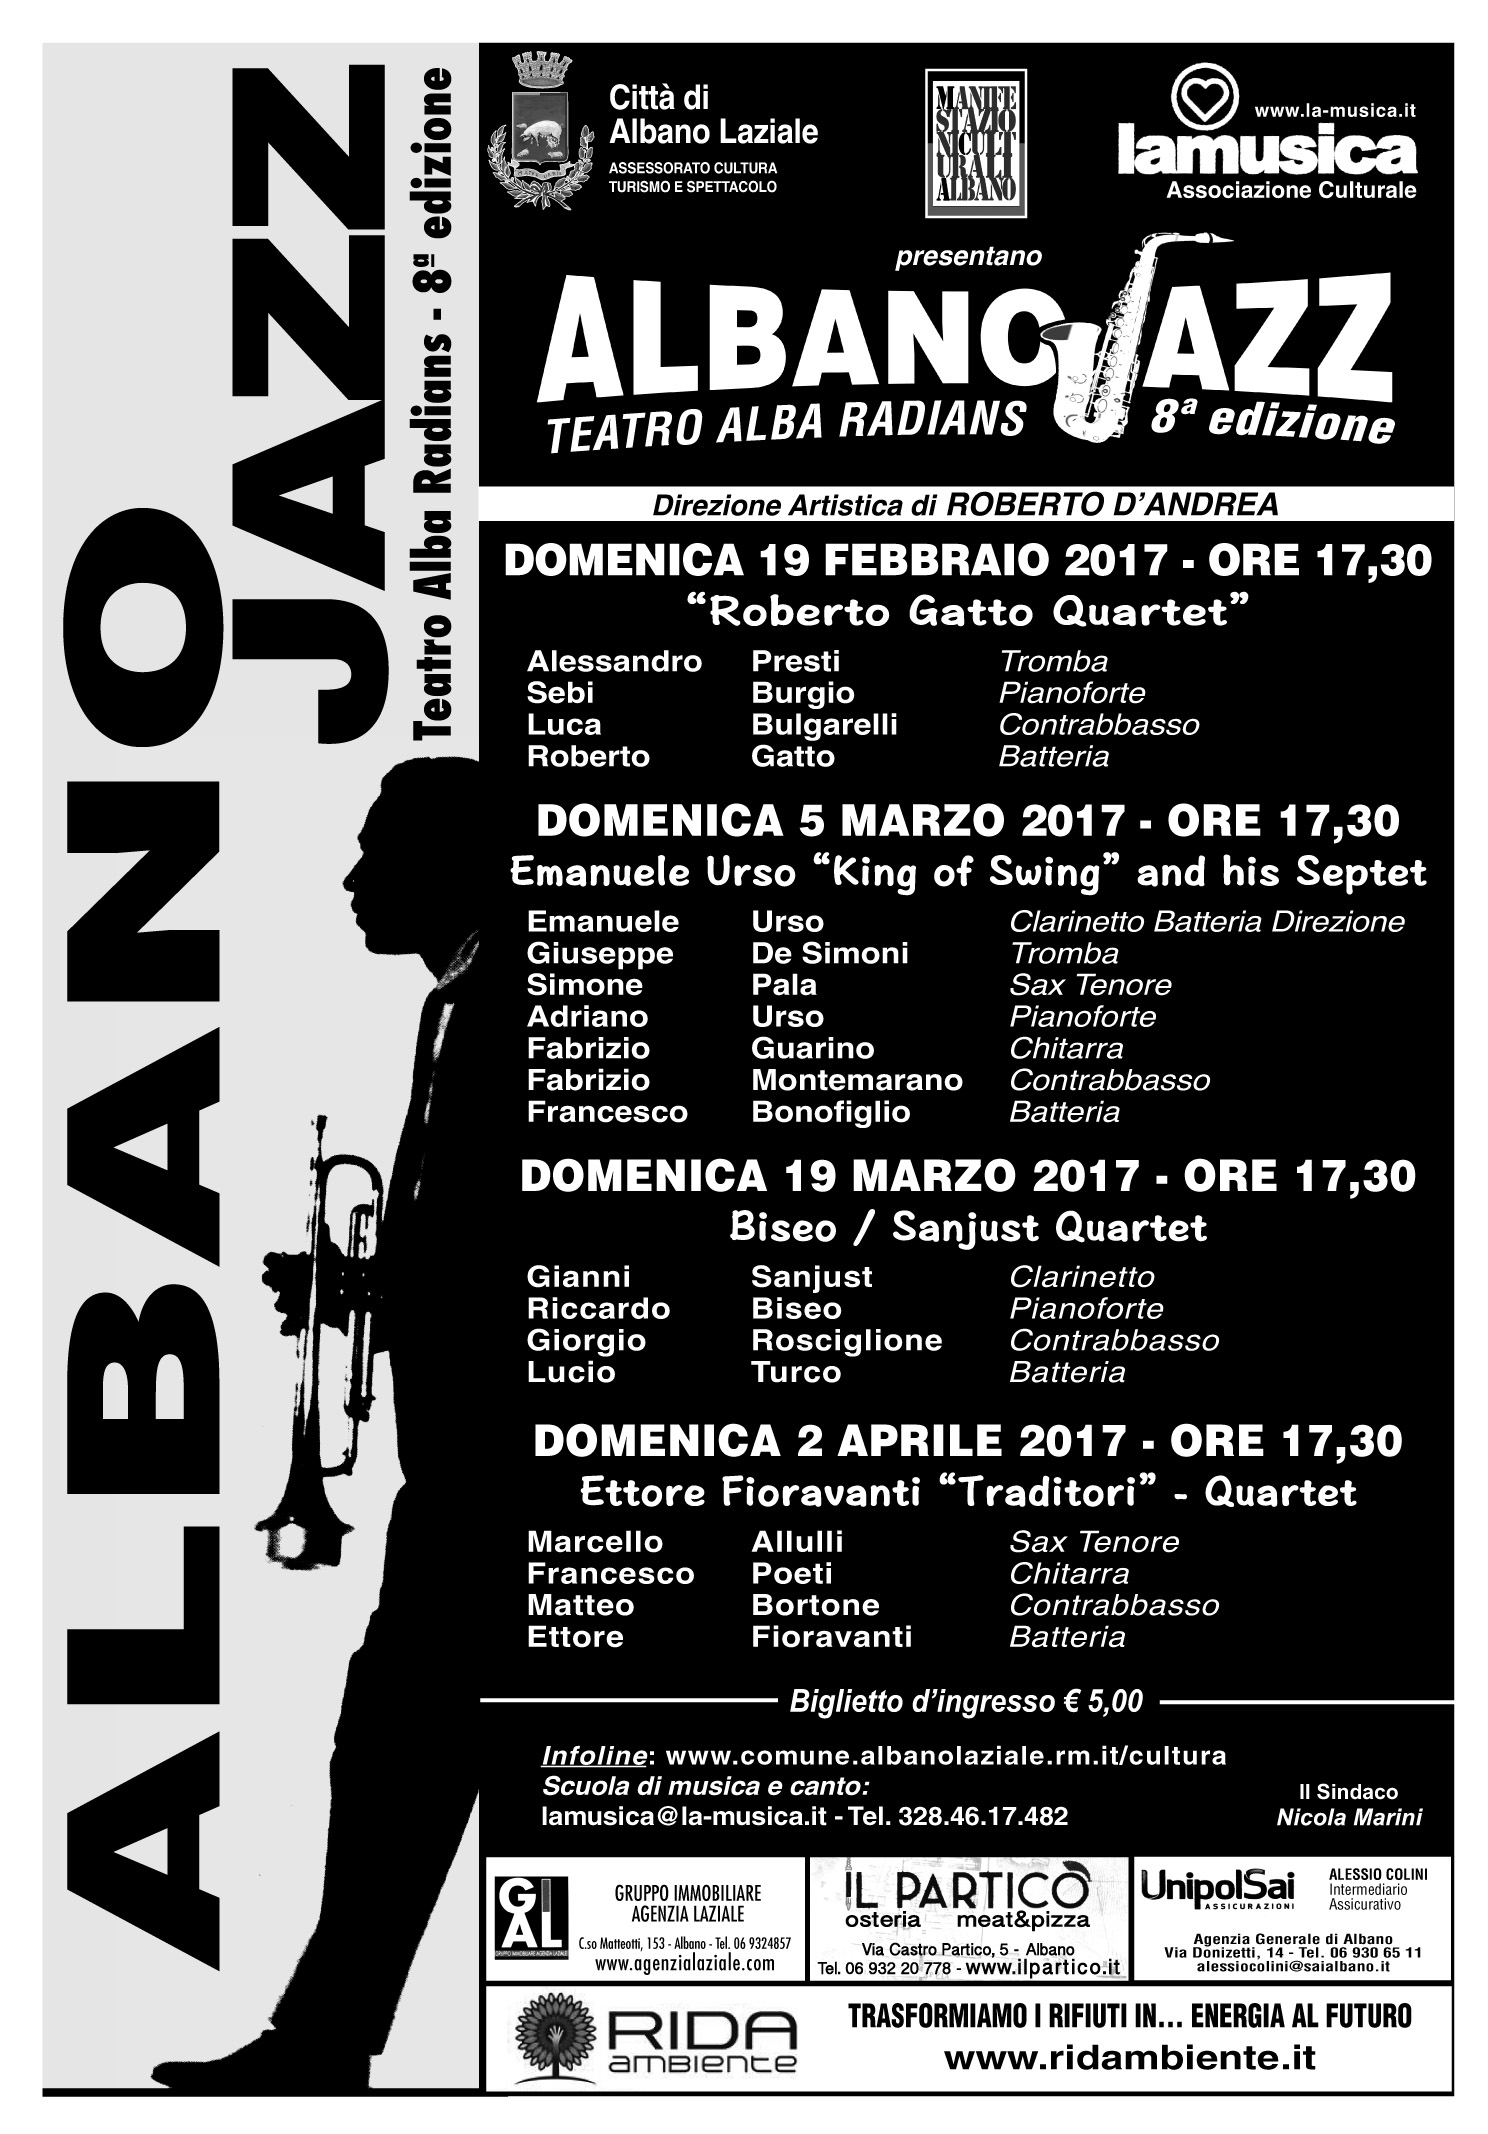 Albano Jazz 2017: domenica 19 febbraio l'ottava edizione dell'evento ad Albano Laziale